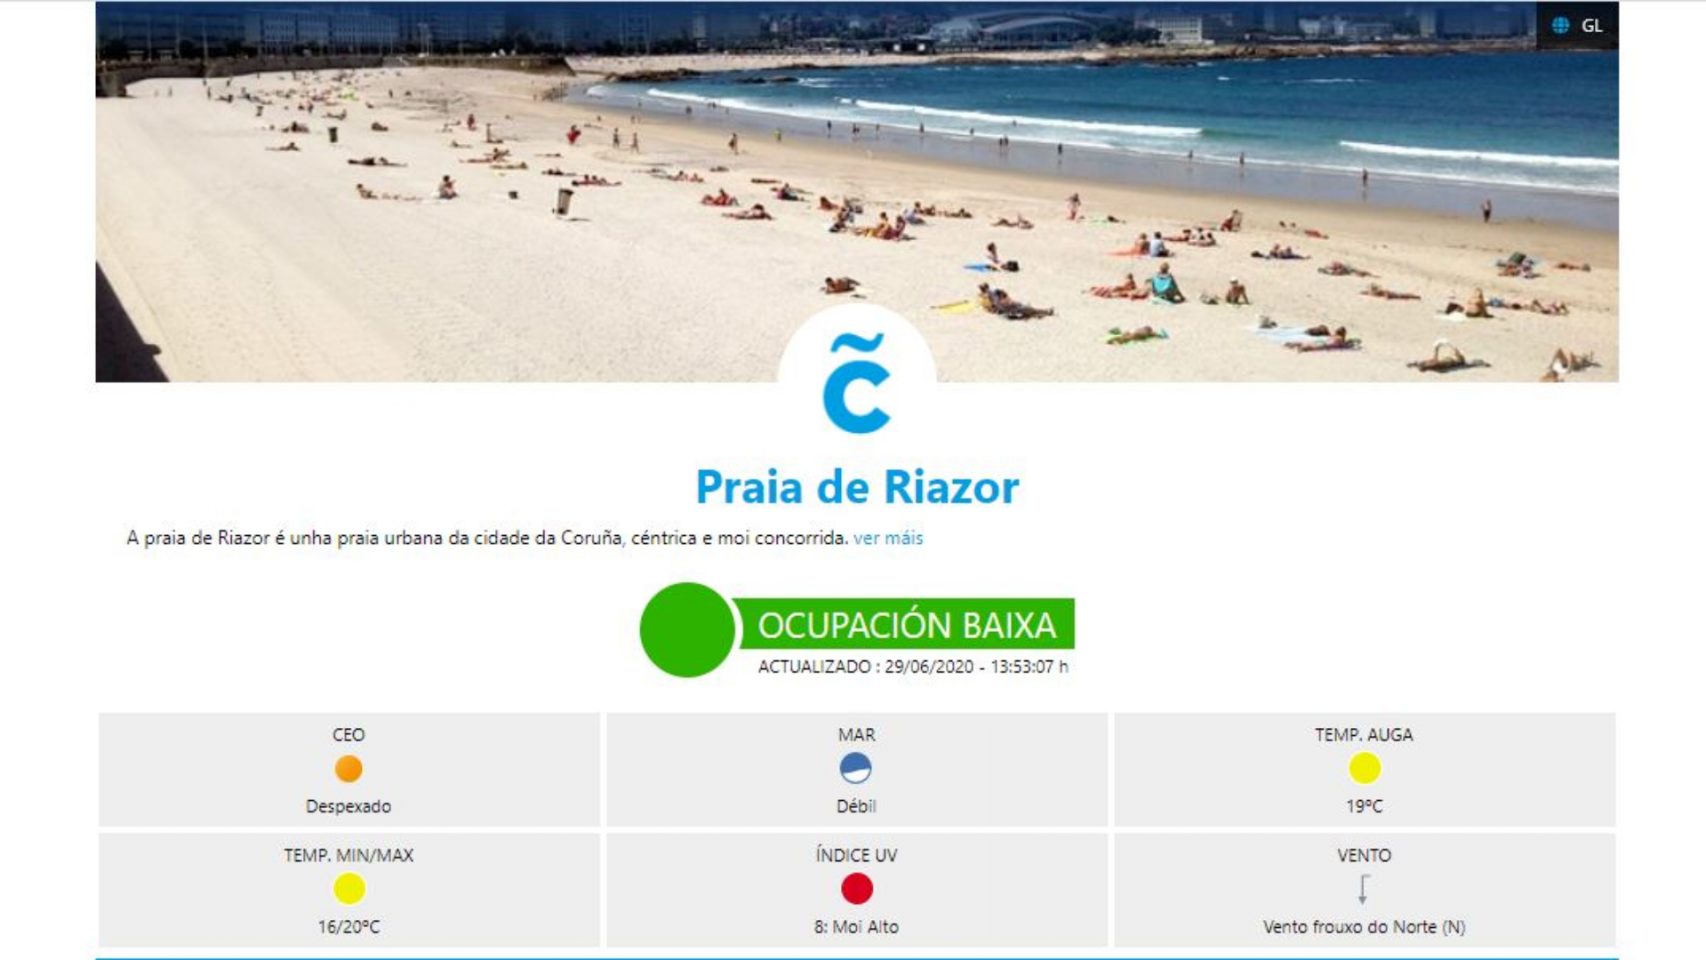 Captura de la página web que cuenta el aforo en playas.